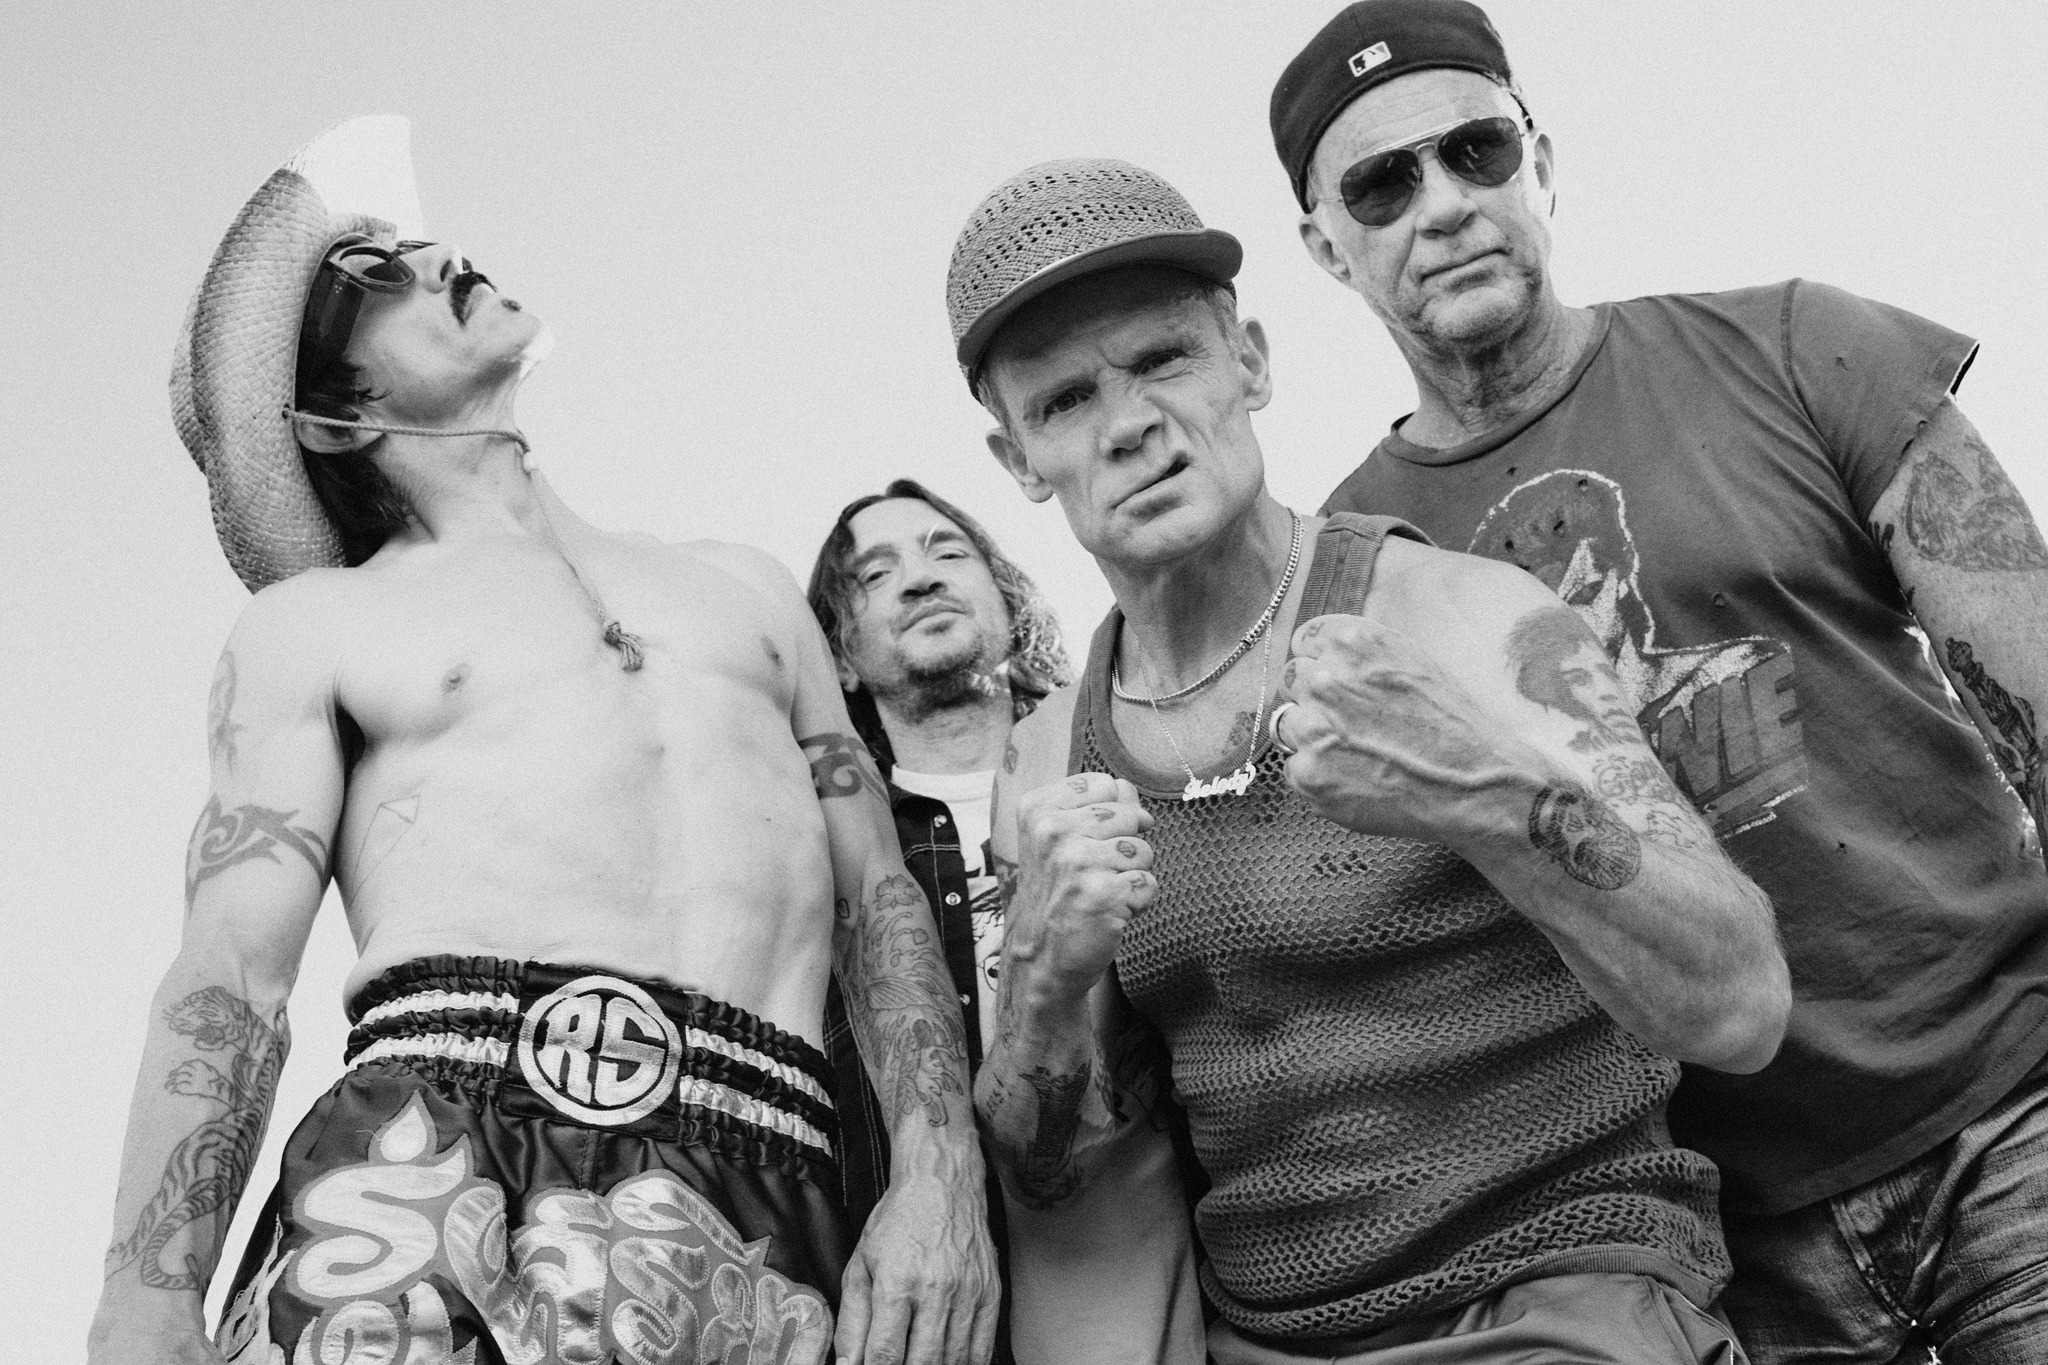 Red Hot Chili Peppers nos hacen volver a su época dorada de los años 90 y del 2000